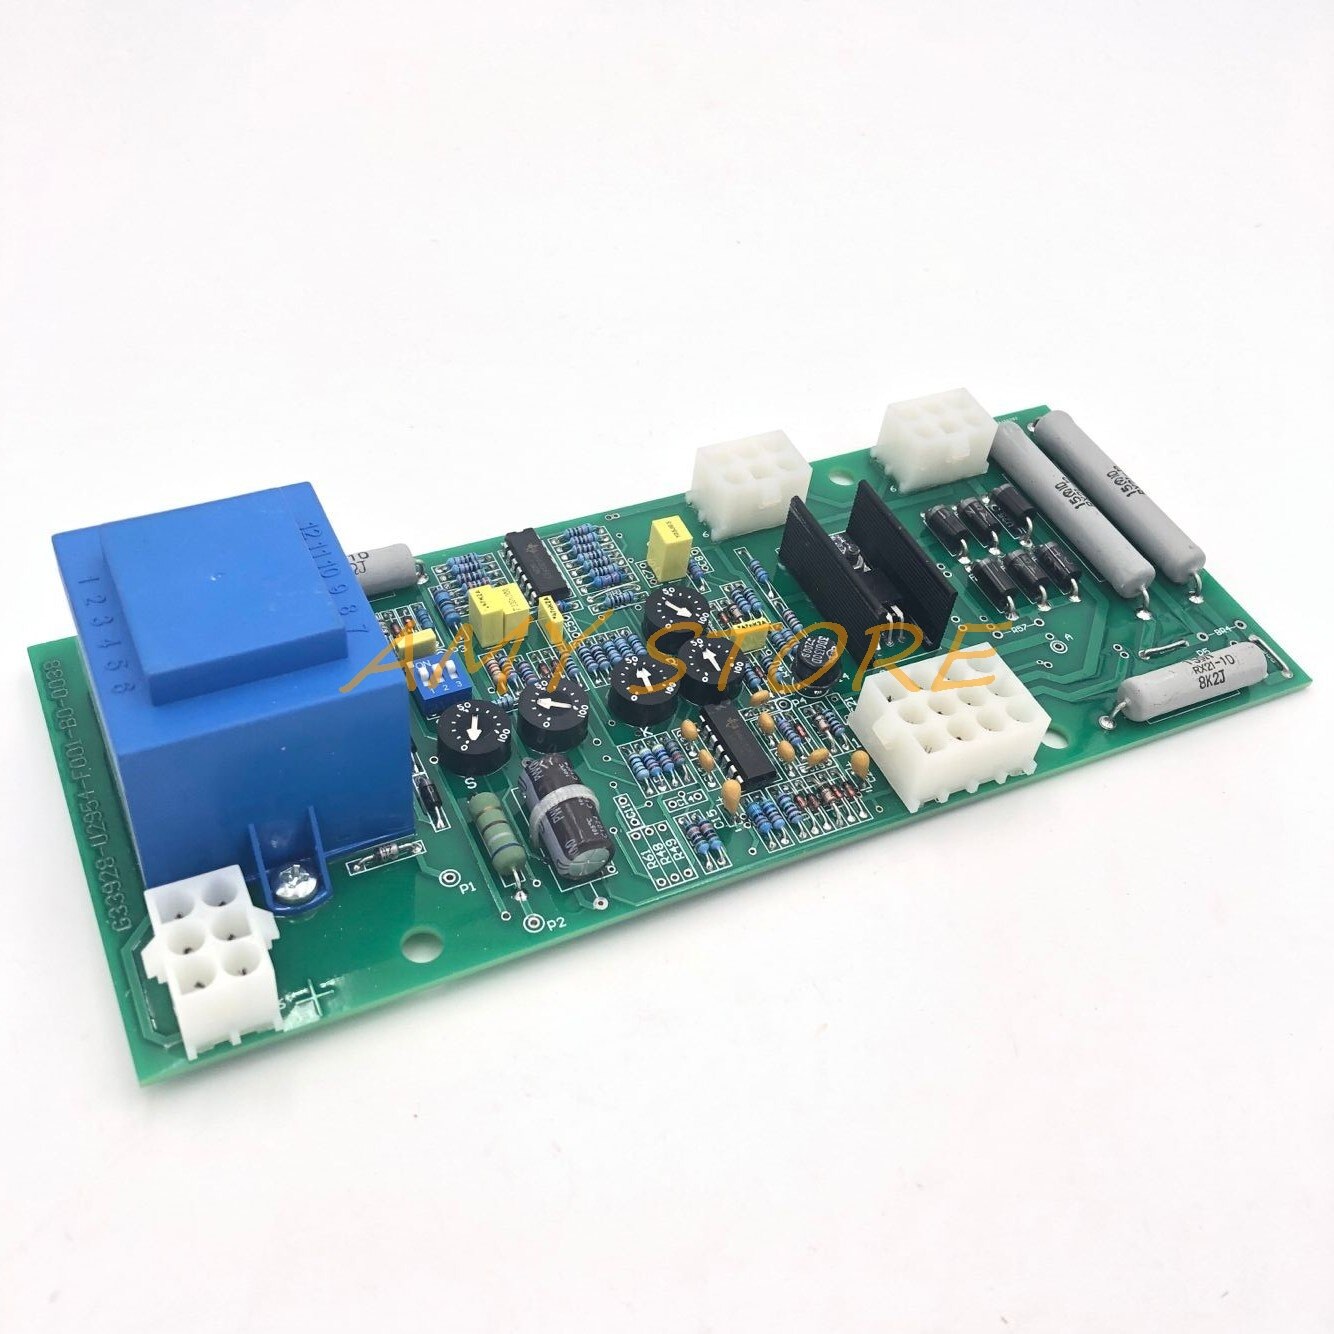 지멘스용 전기 발전기 자동 전압 조정기 AVR 컨트롤러 6GA2 491-1A 카드, 지멘스